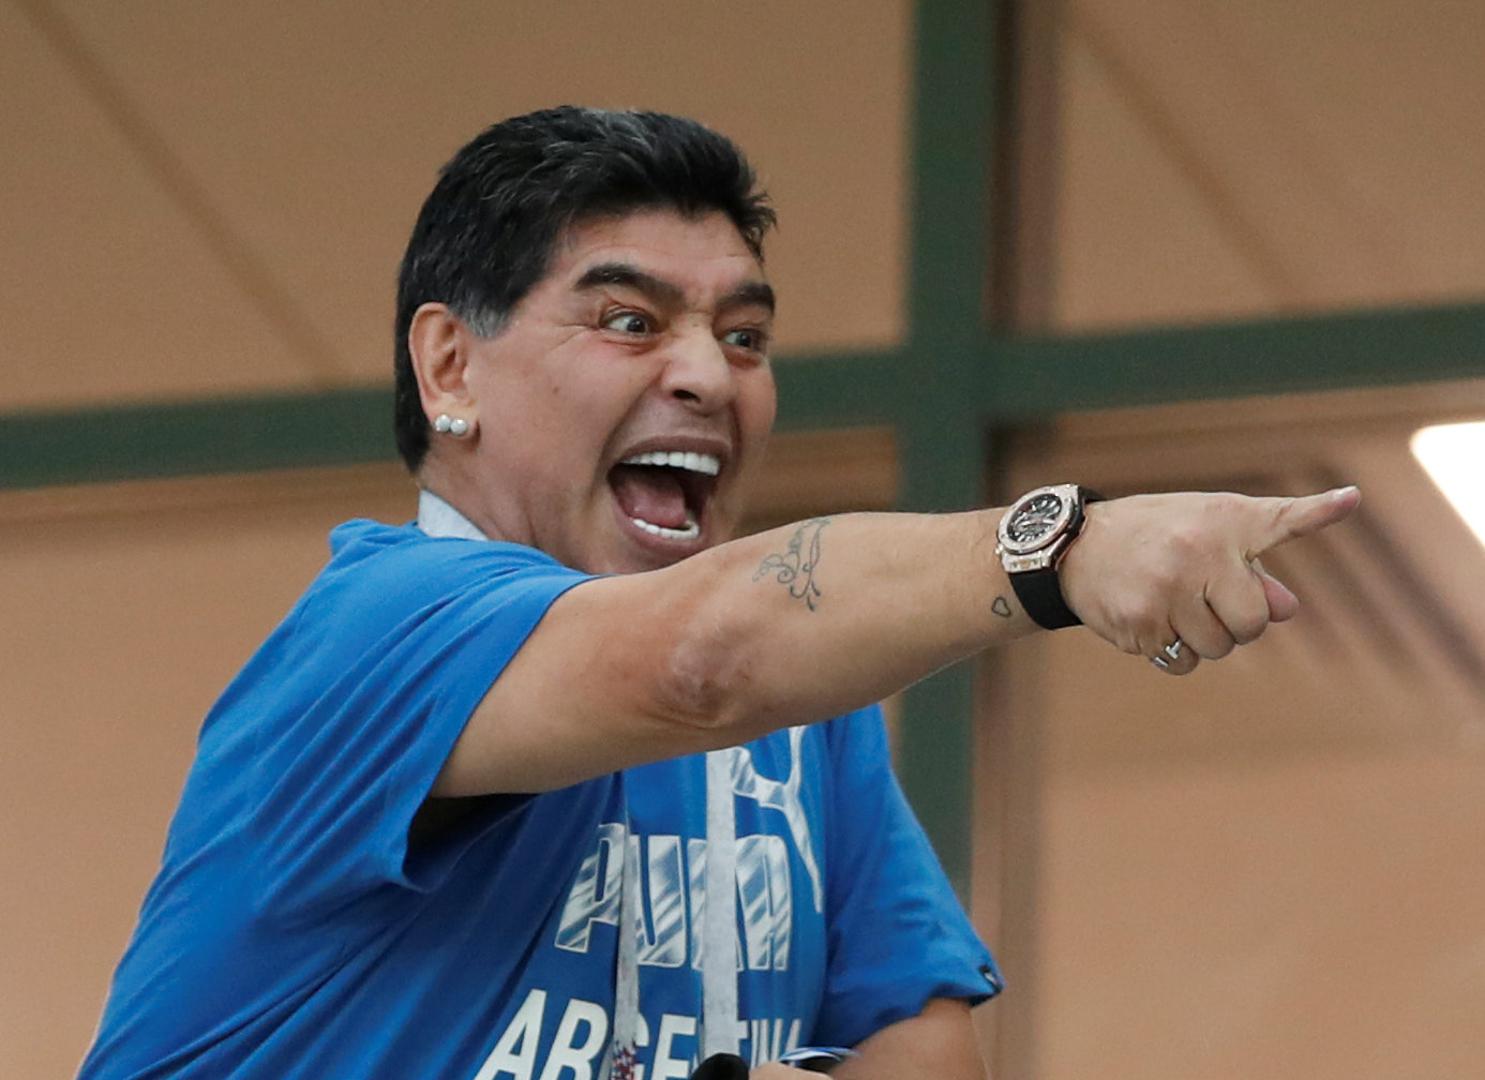 Utakmicu Hrvatske i Argentine u Nižnji Novgorodu prati i legendarni Diego Armando Maradona.

